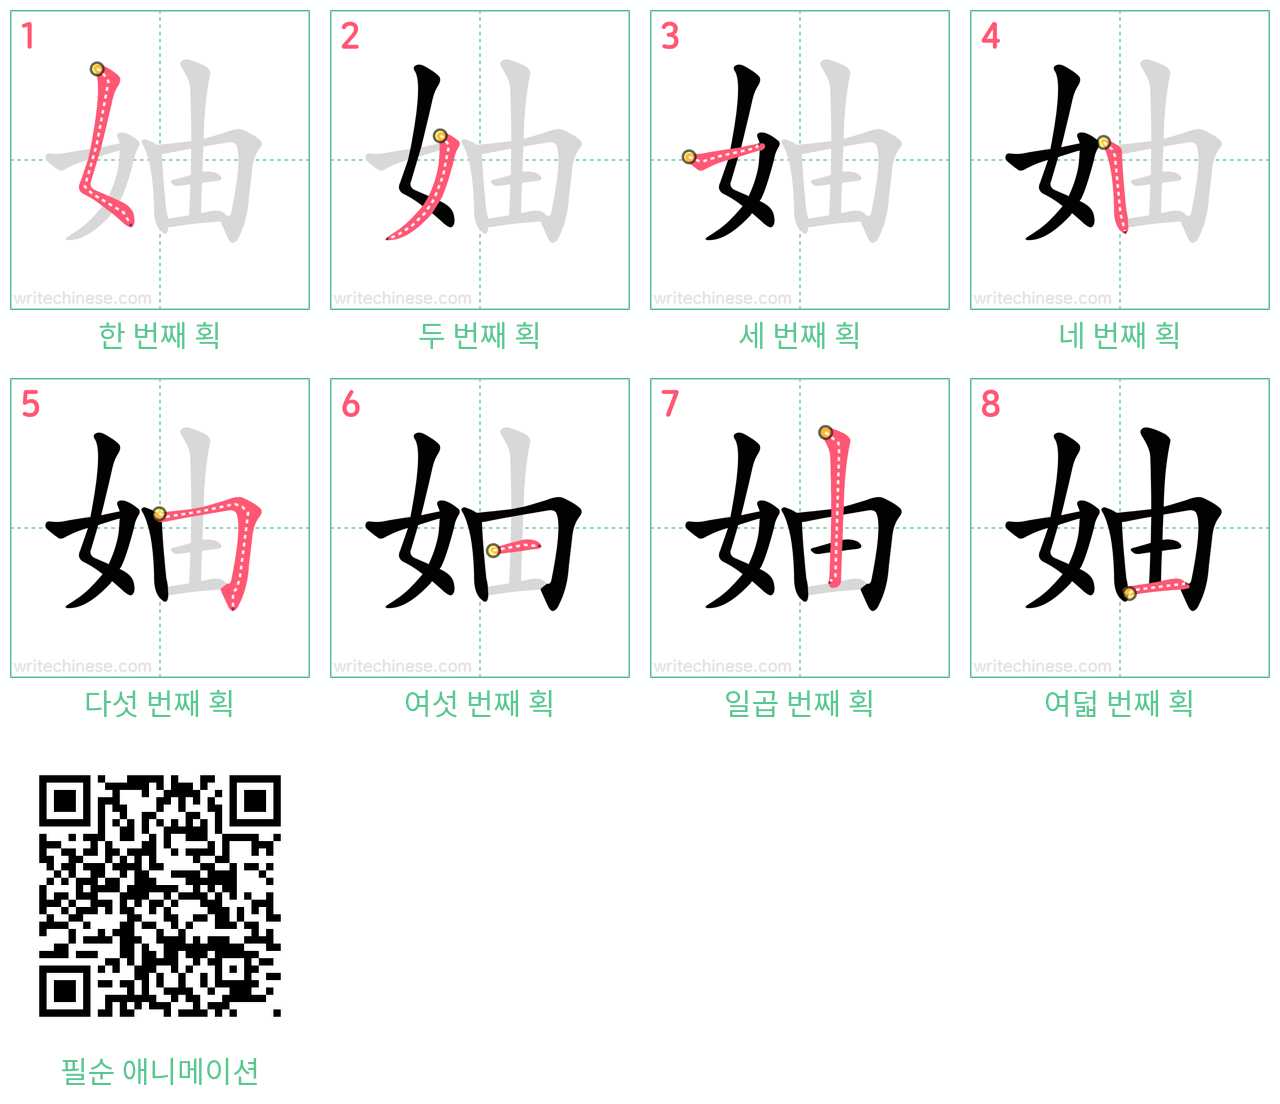 妯 step-by-step stroke order diagrams